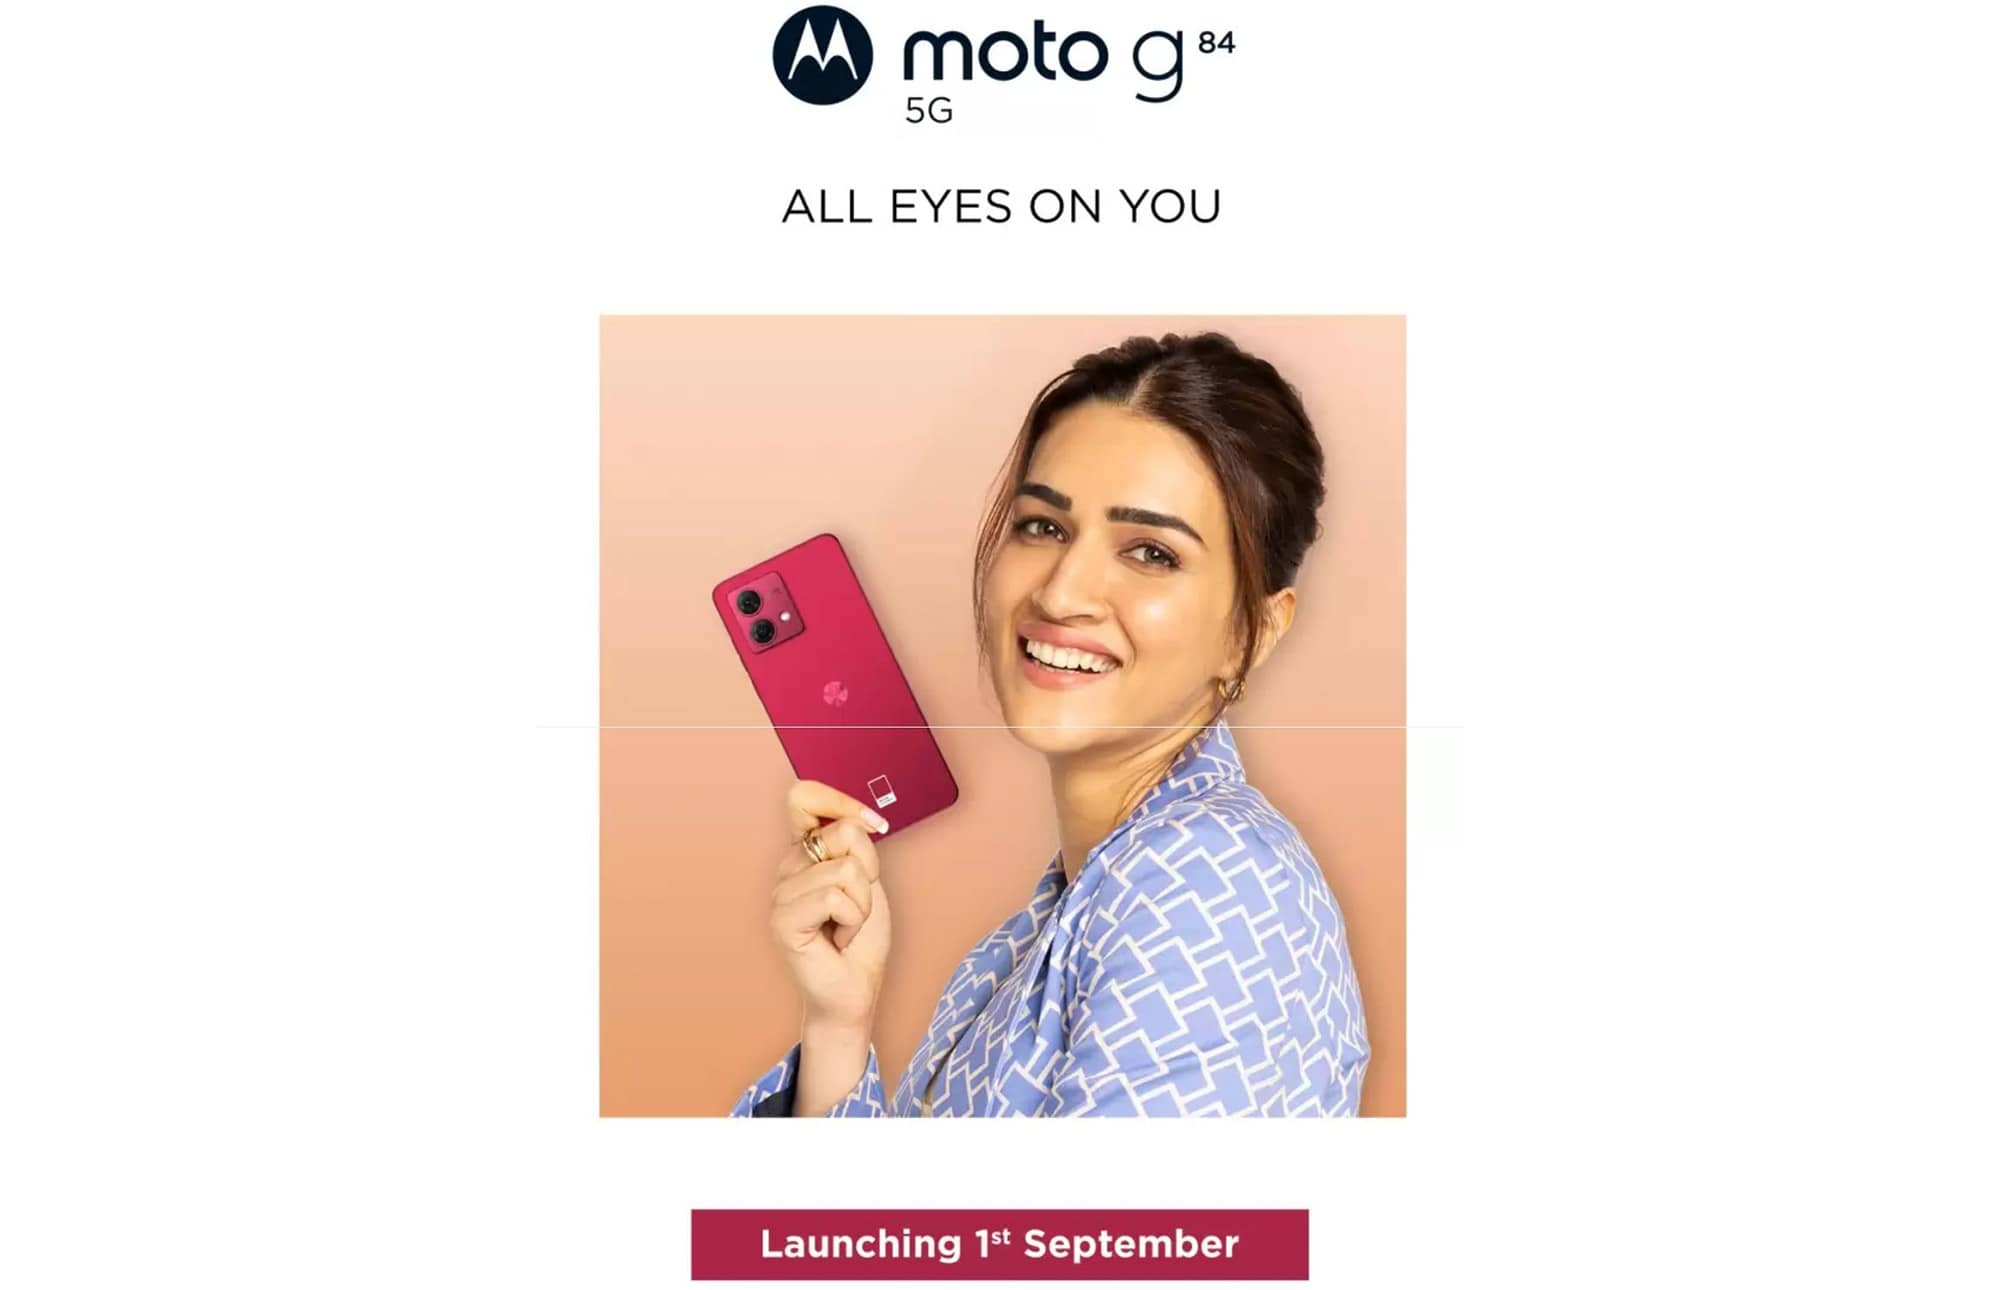 Объявлена официальная дата выпуска смартфона Moto G84 5G